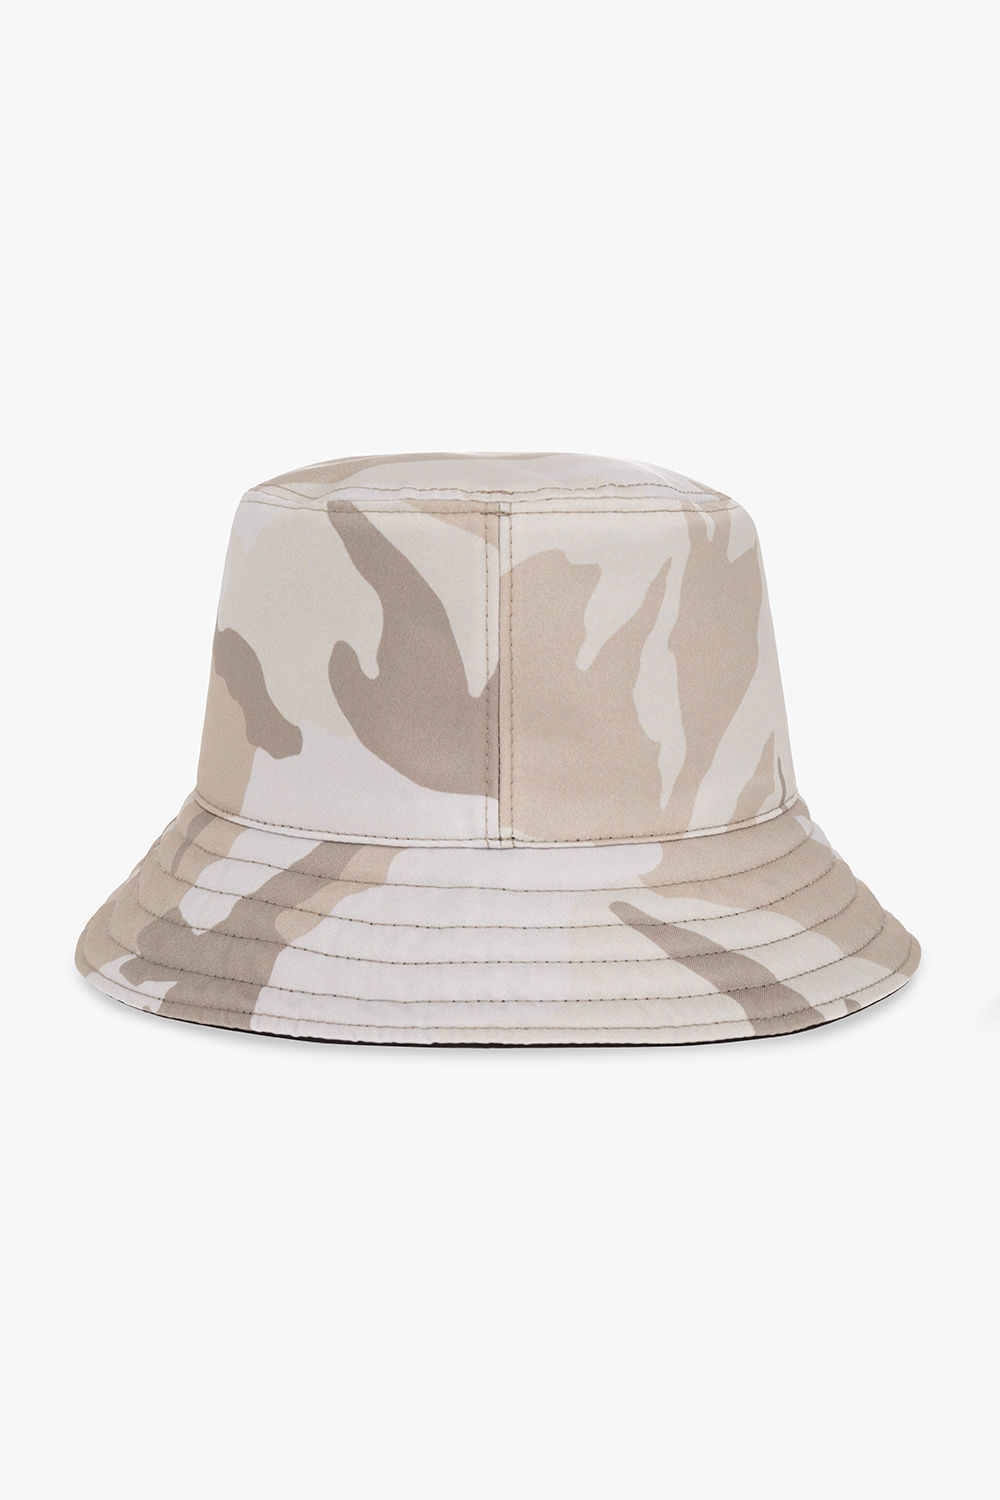 SVNX Mesh Bucket Hat With Pocket Detail-Black for Men